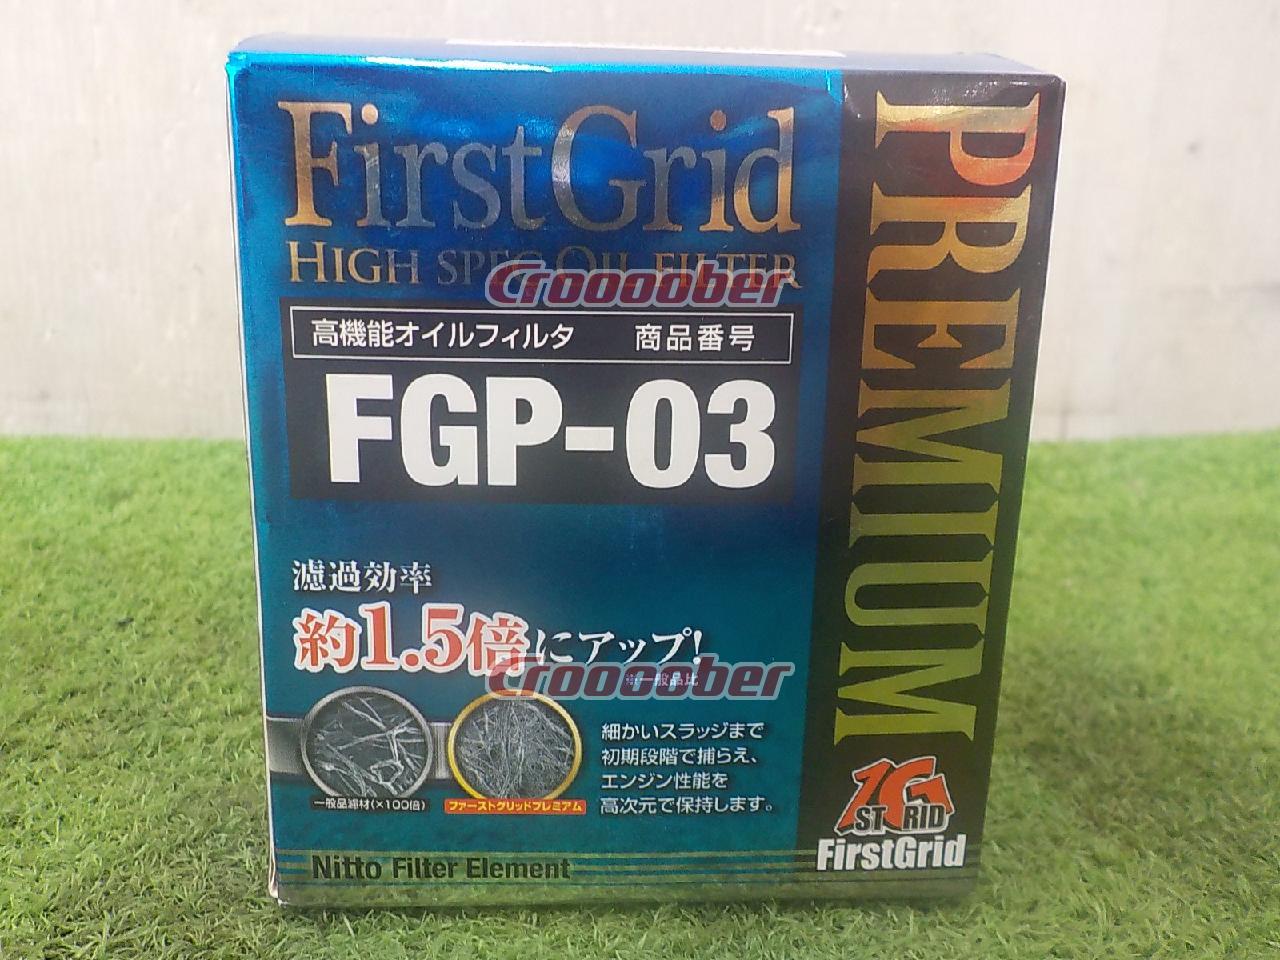 割引購入 FirstGrid PREMIUM 高機能オイルフィルター FGP-041 650円